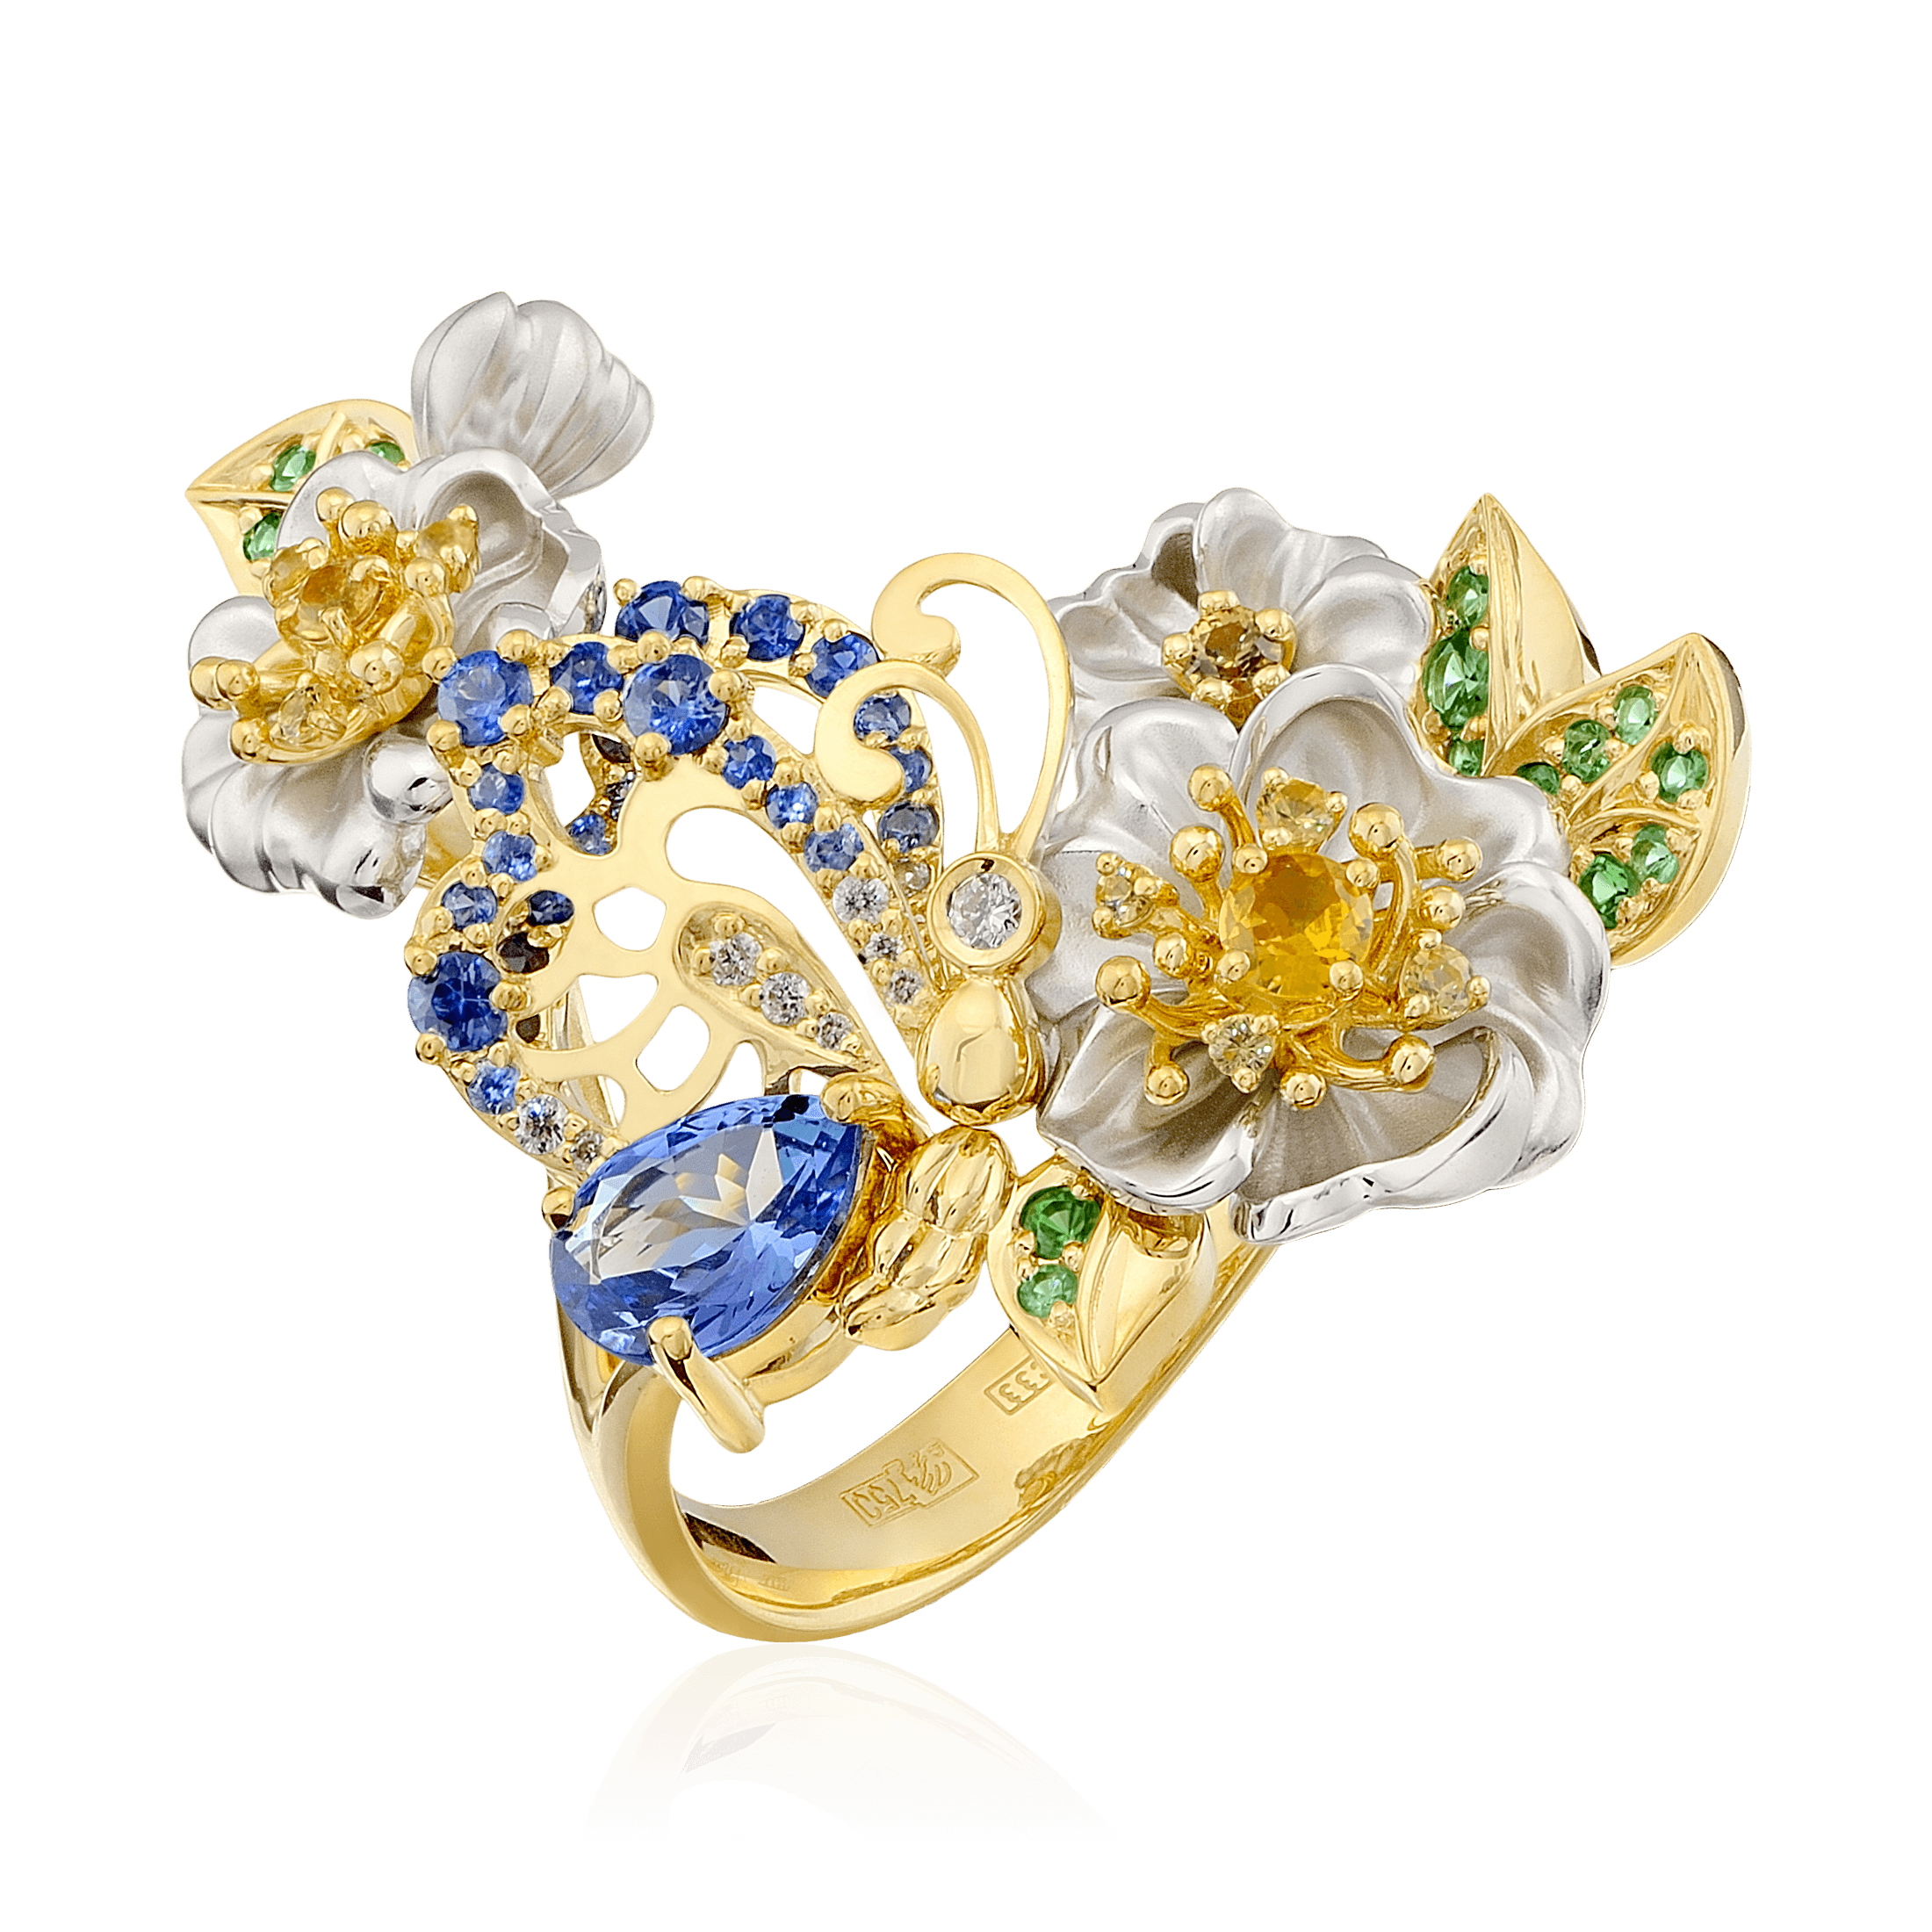 Кольцо Цветы с танзанитом, сапфиром, бриллиантами, тсаворитом из желтого золота 750 пробы, фото № 1